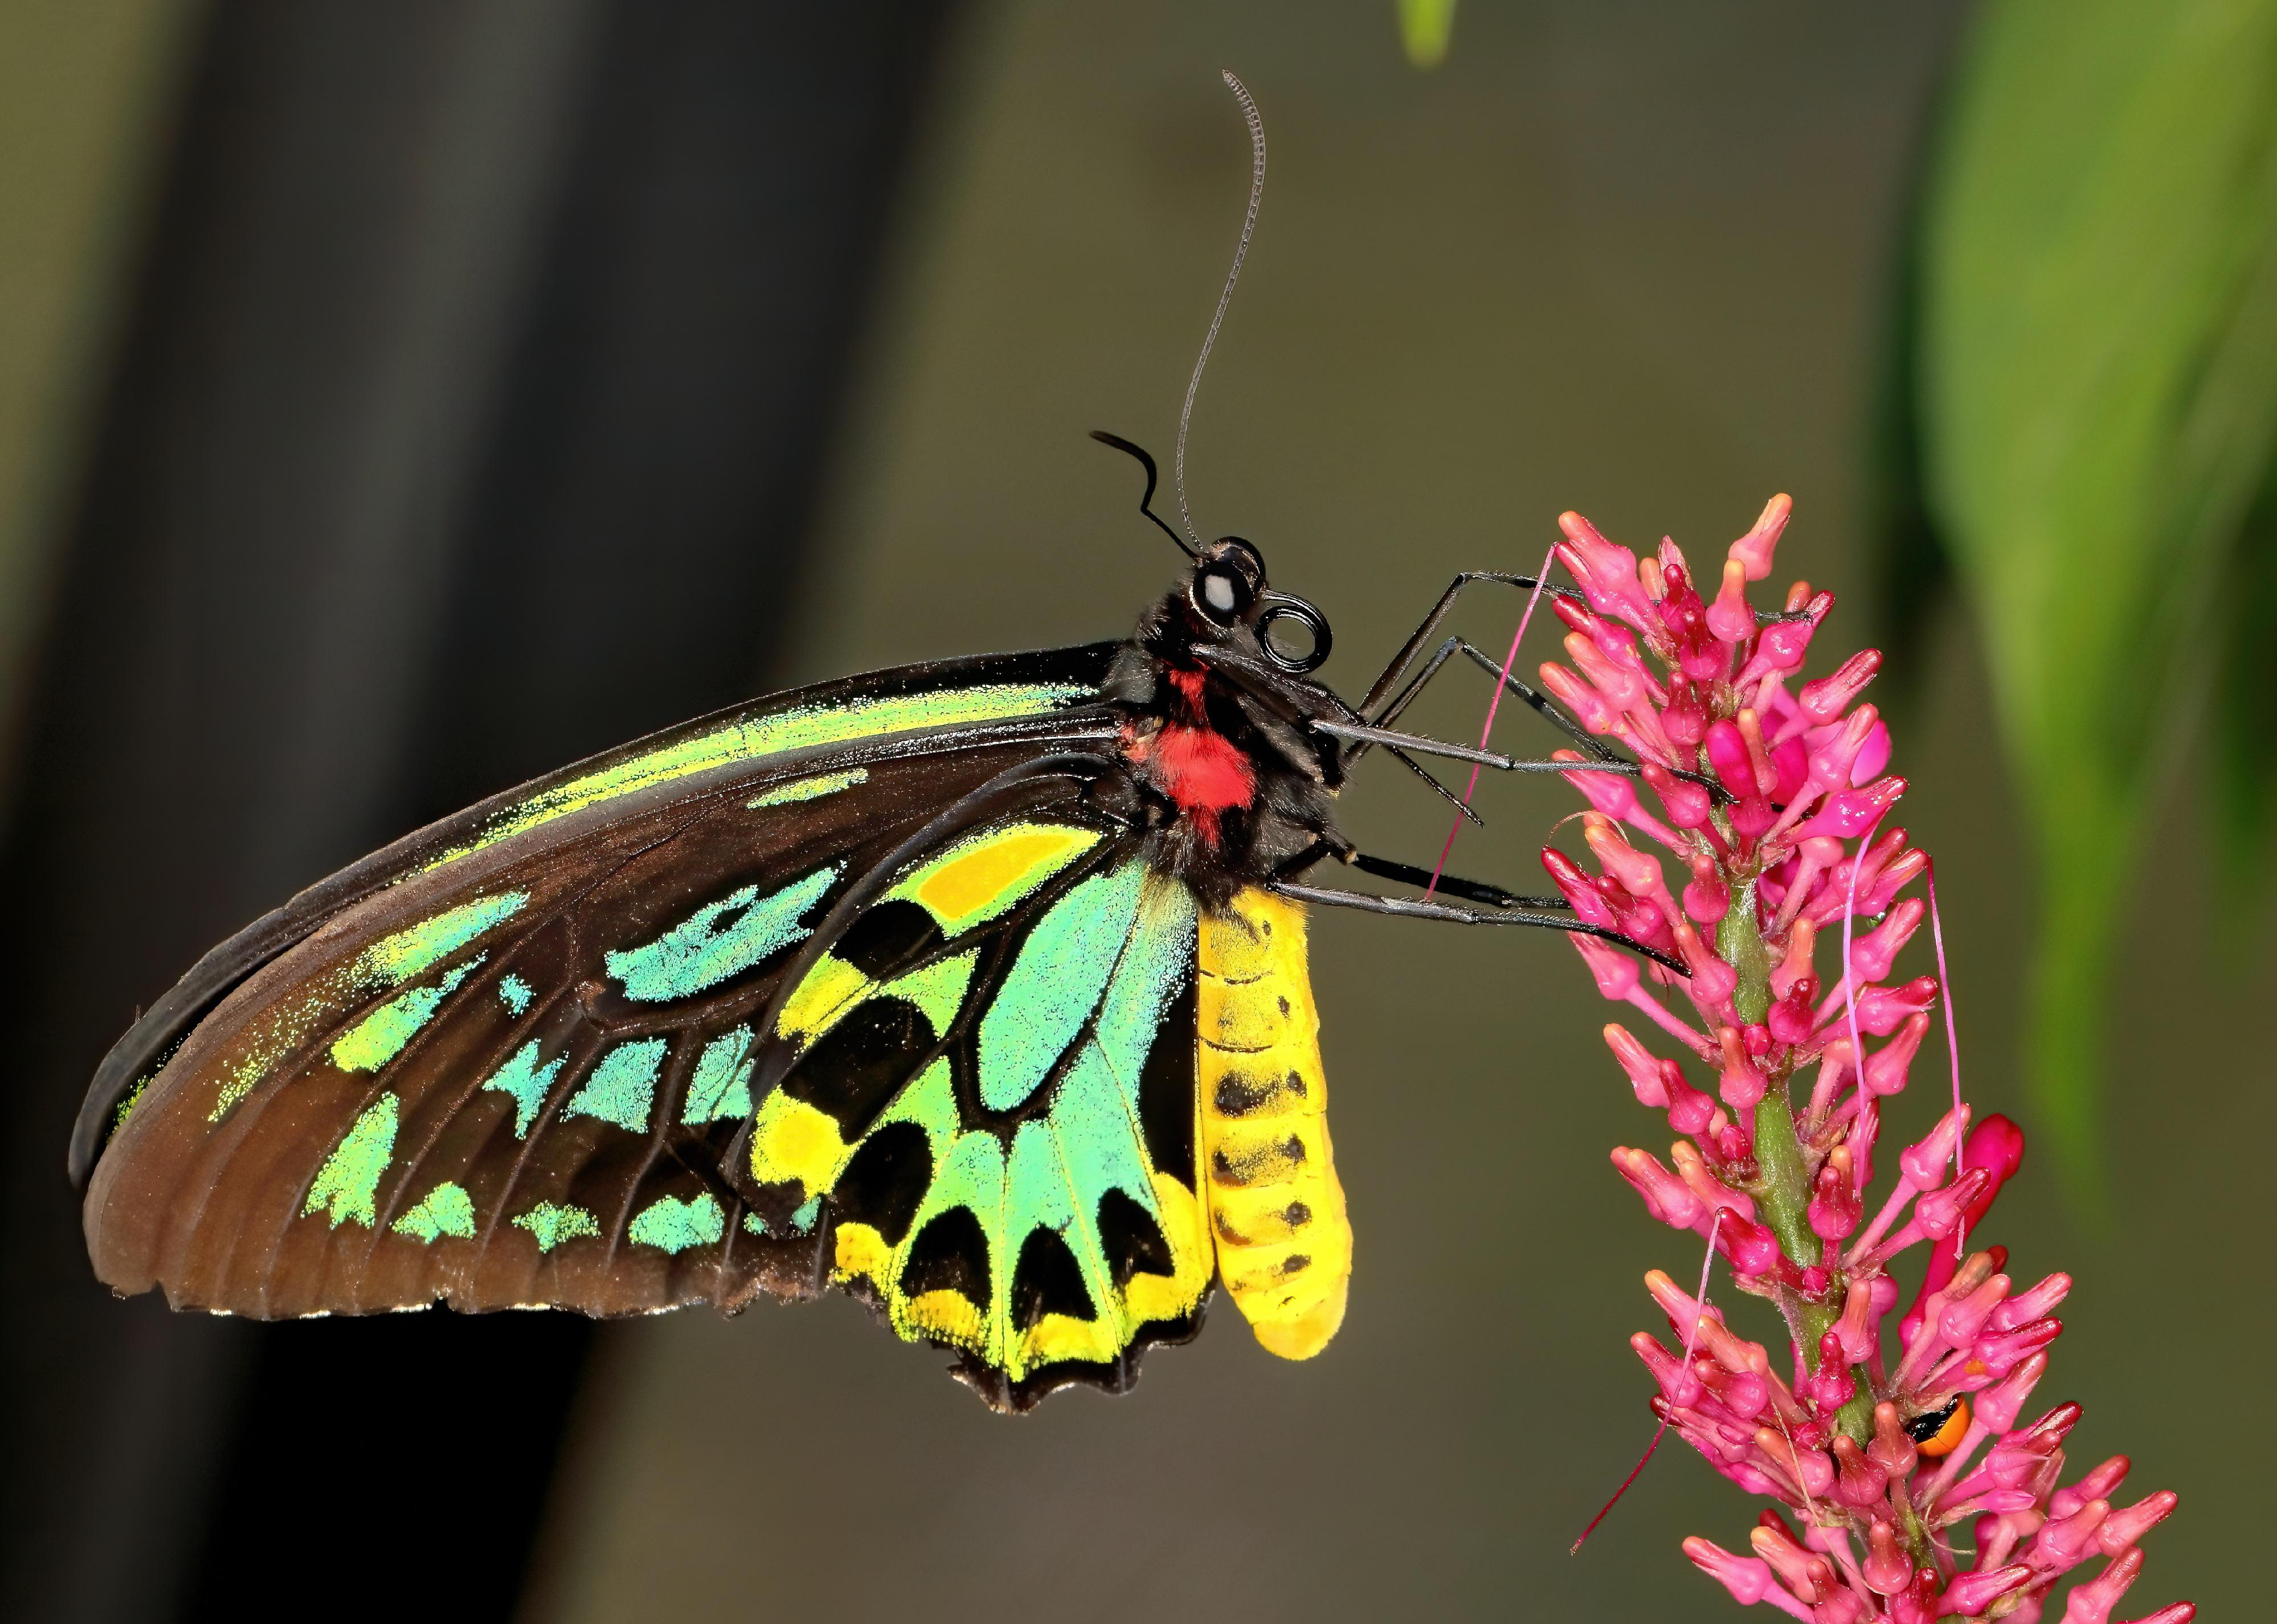 Close-up of a Queen Alexandra's birdwing butterfly.